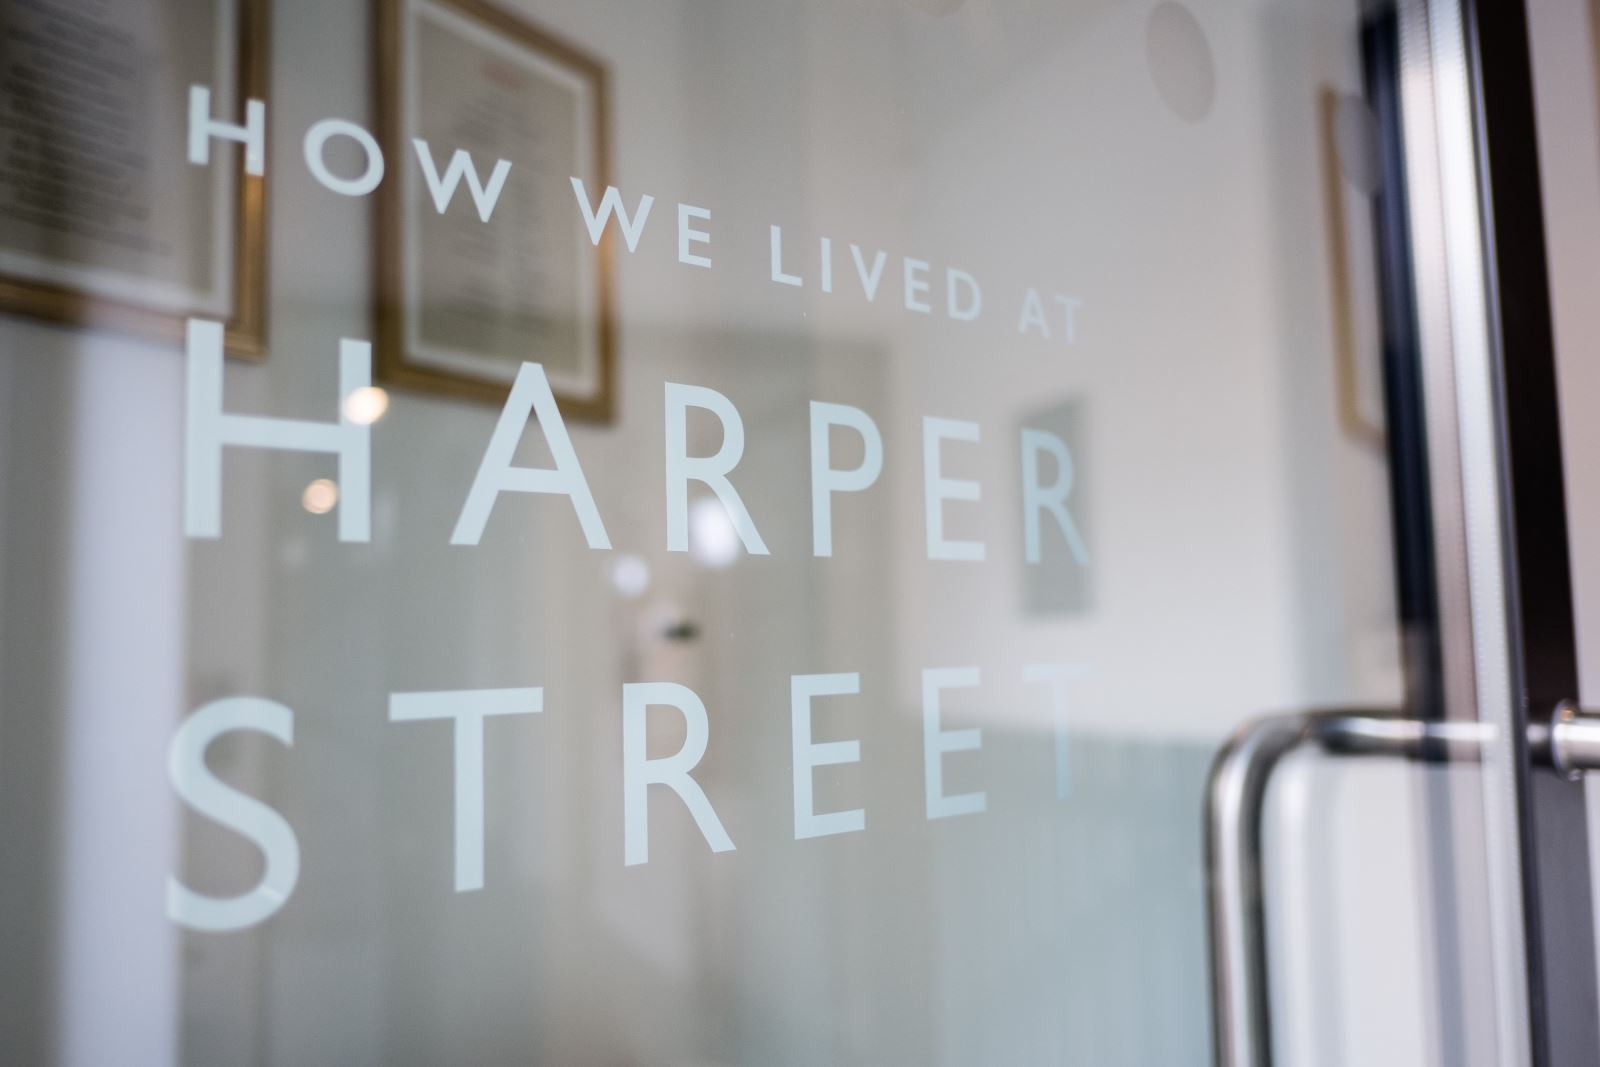 How We Lived at Harper Street